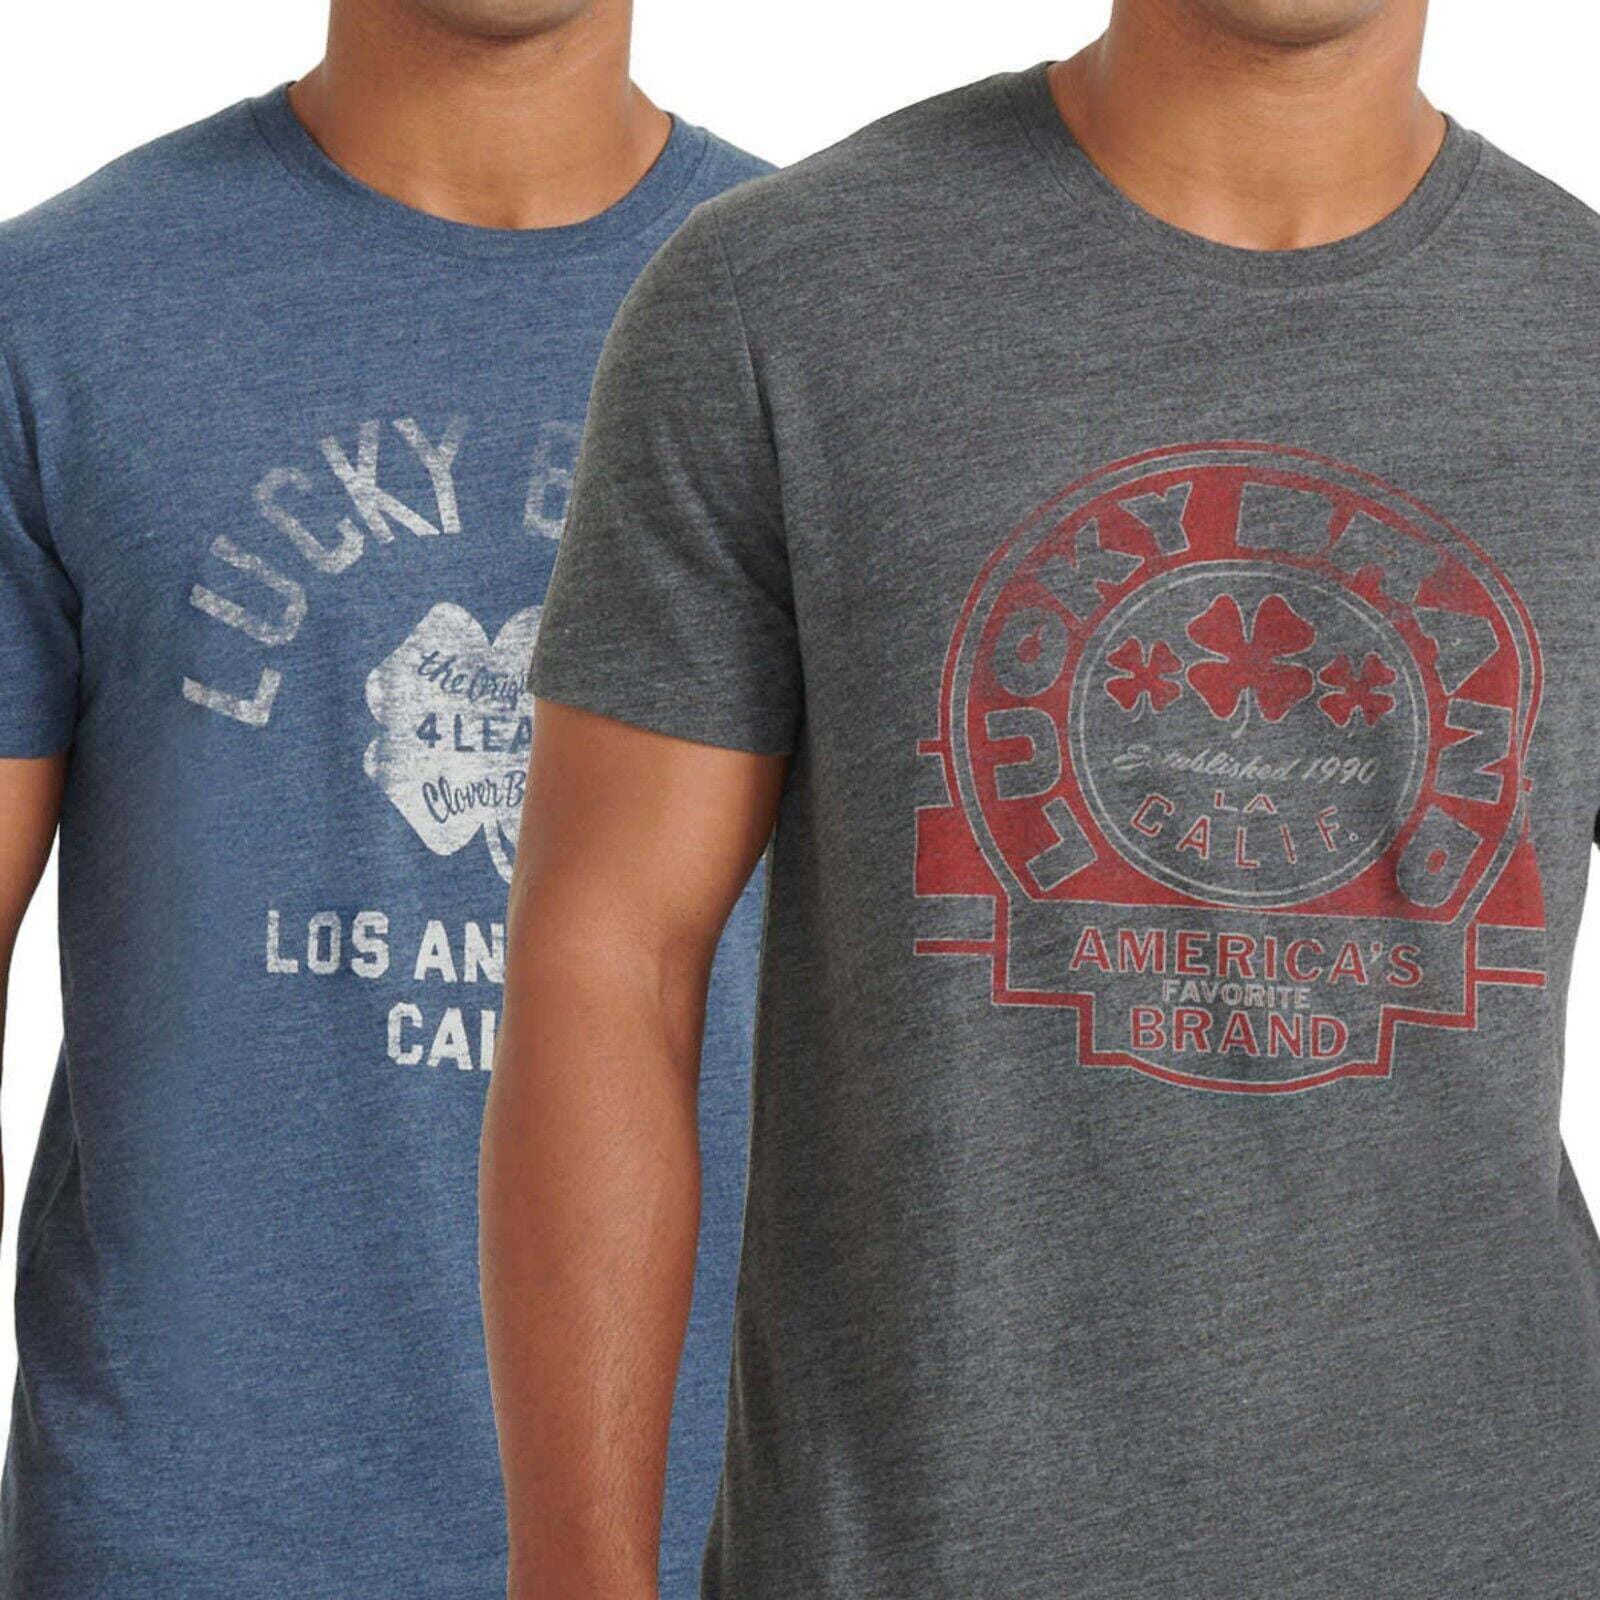 Cotton Print Short Logo Sleeve Brand 2-Pack T-Shirt Men\'s Blend Soft Jersey Lucky Tee Graphic